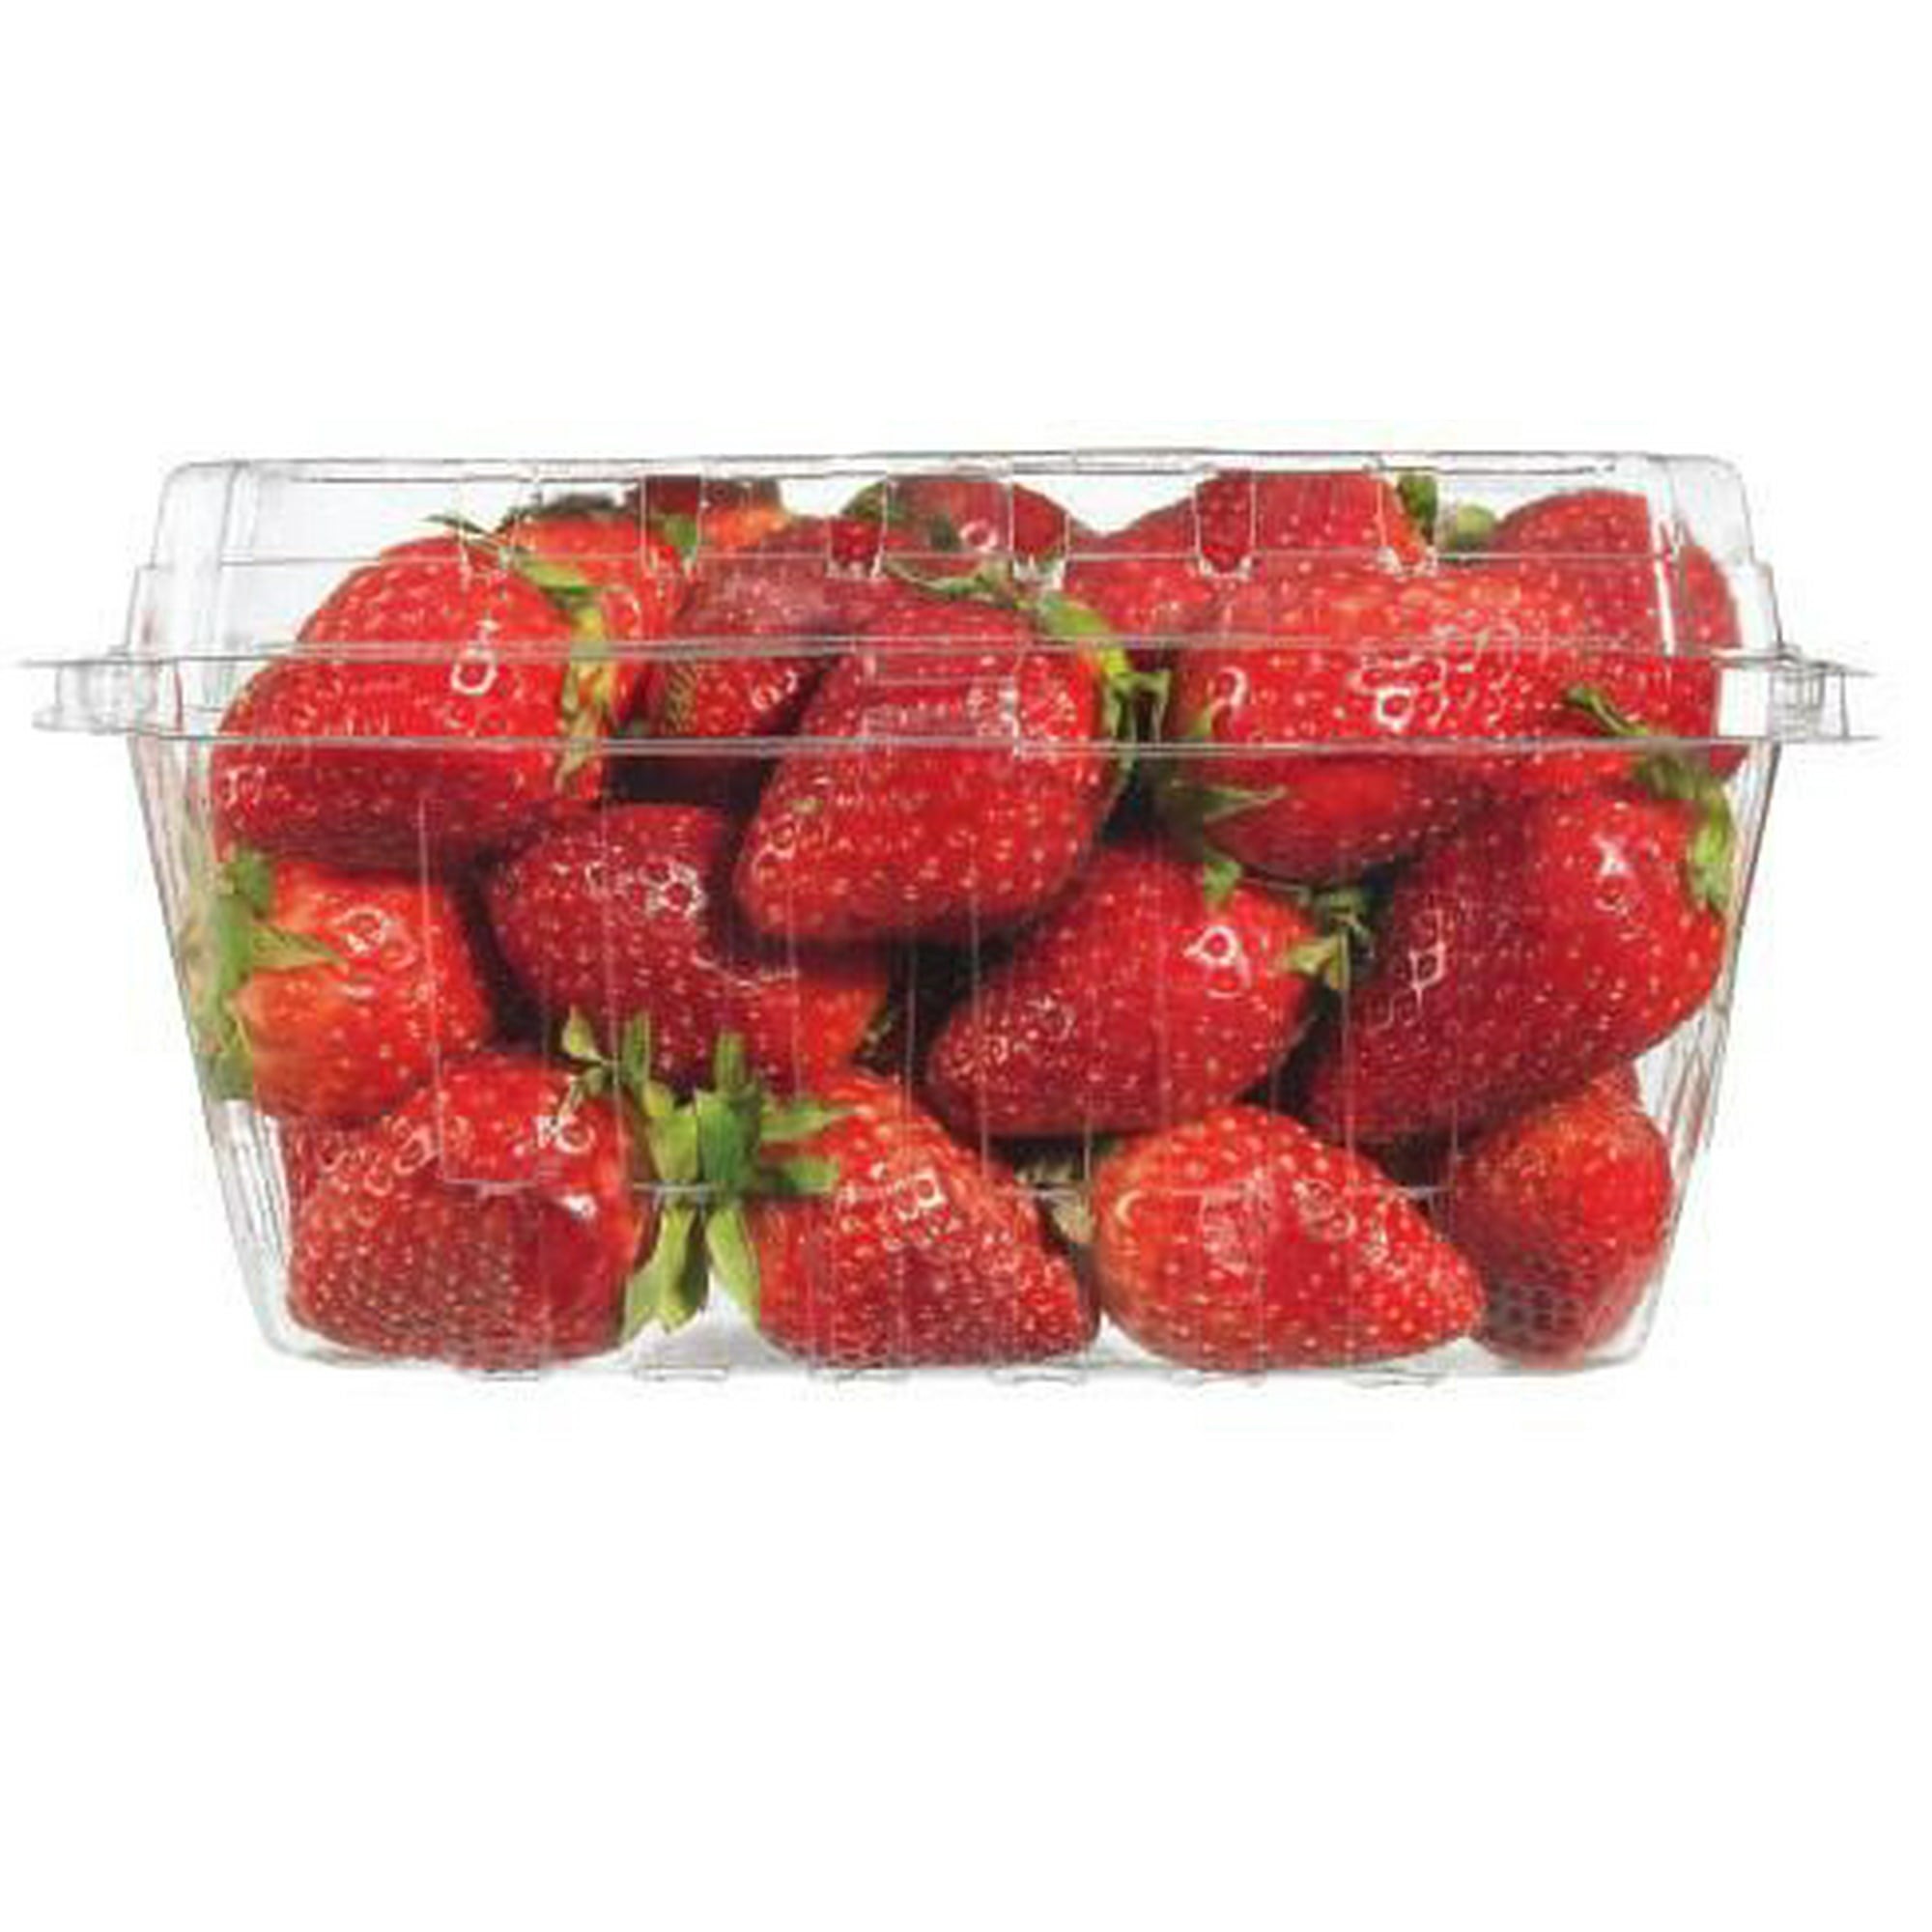 fresh-strawberries-pack